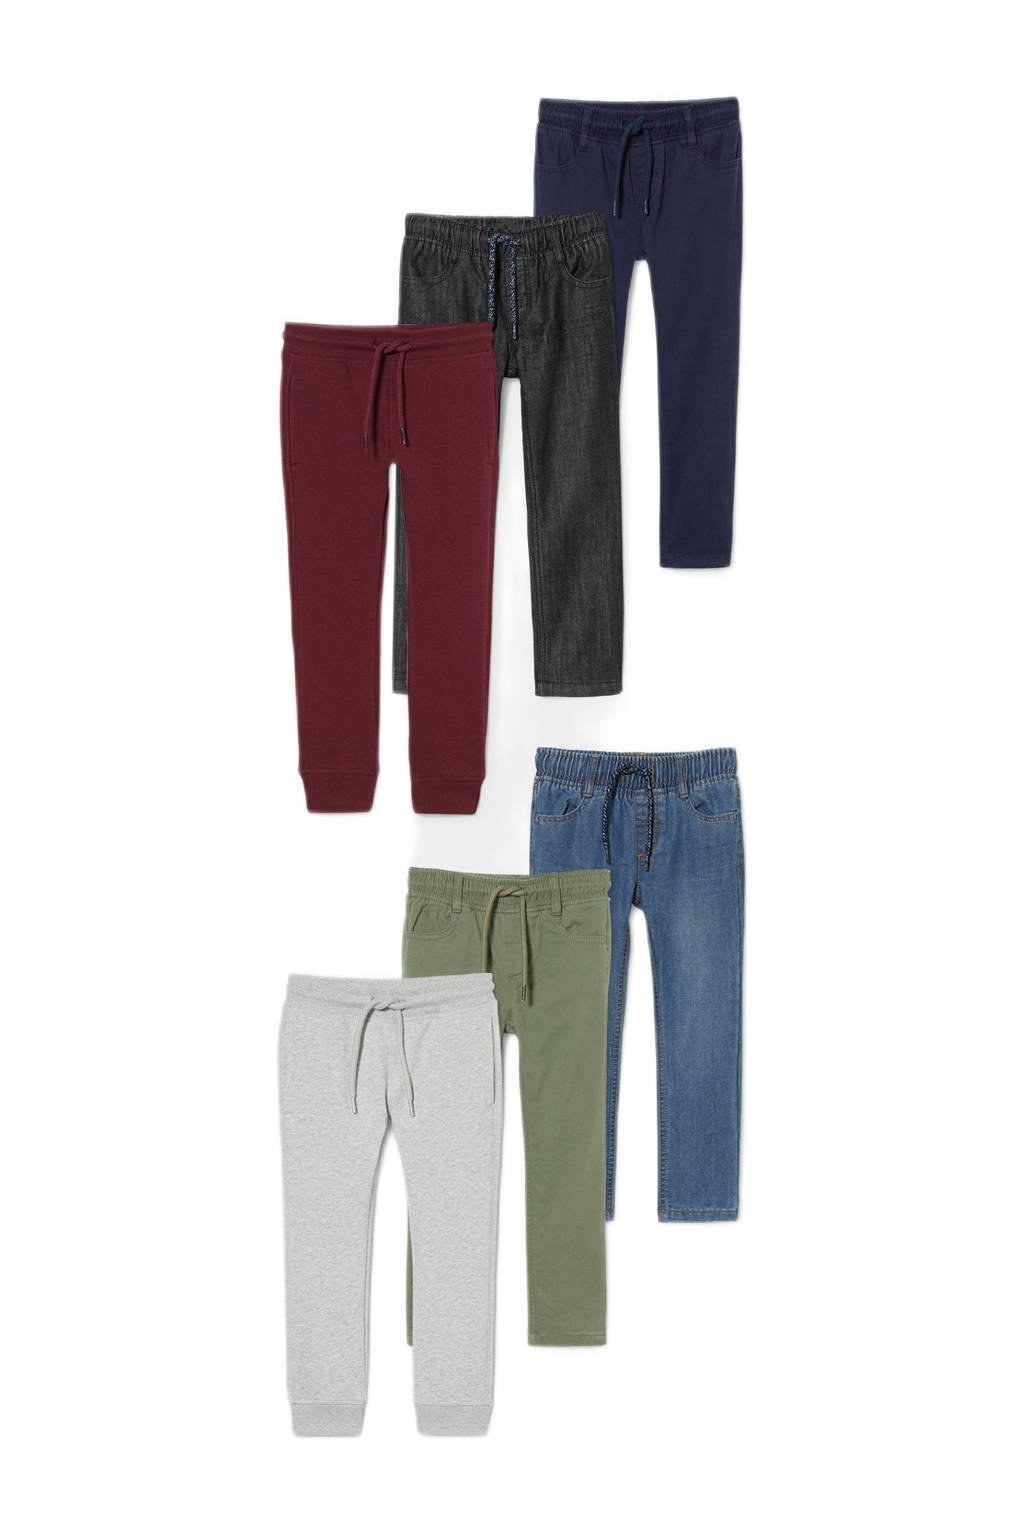 Set van 6 multikleurige jongens C&A broek van katoen met slim fit, regular waist en elastische tailleband met koord